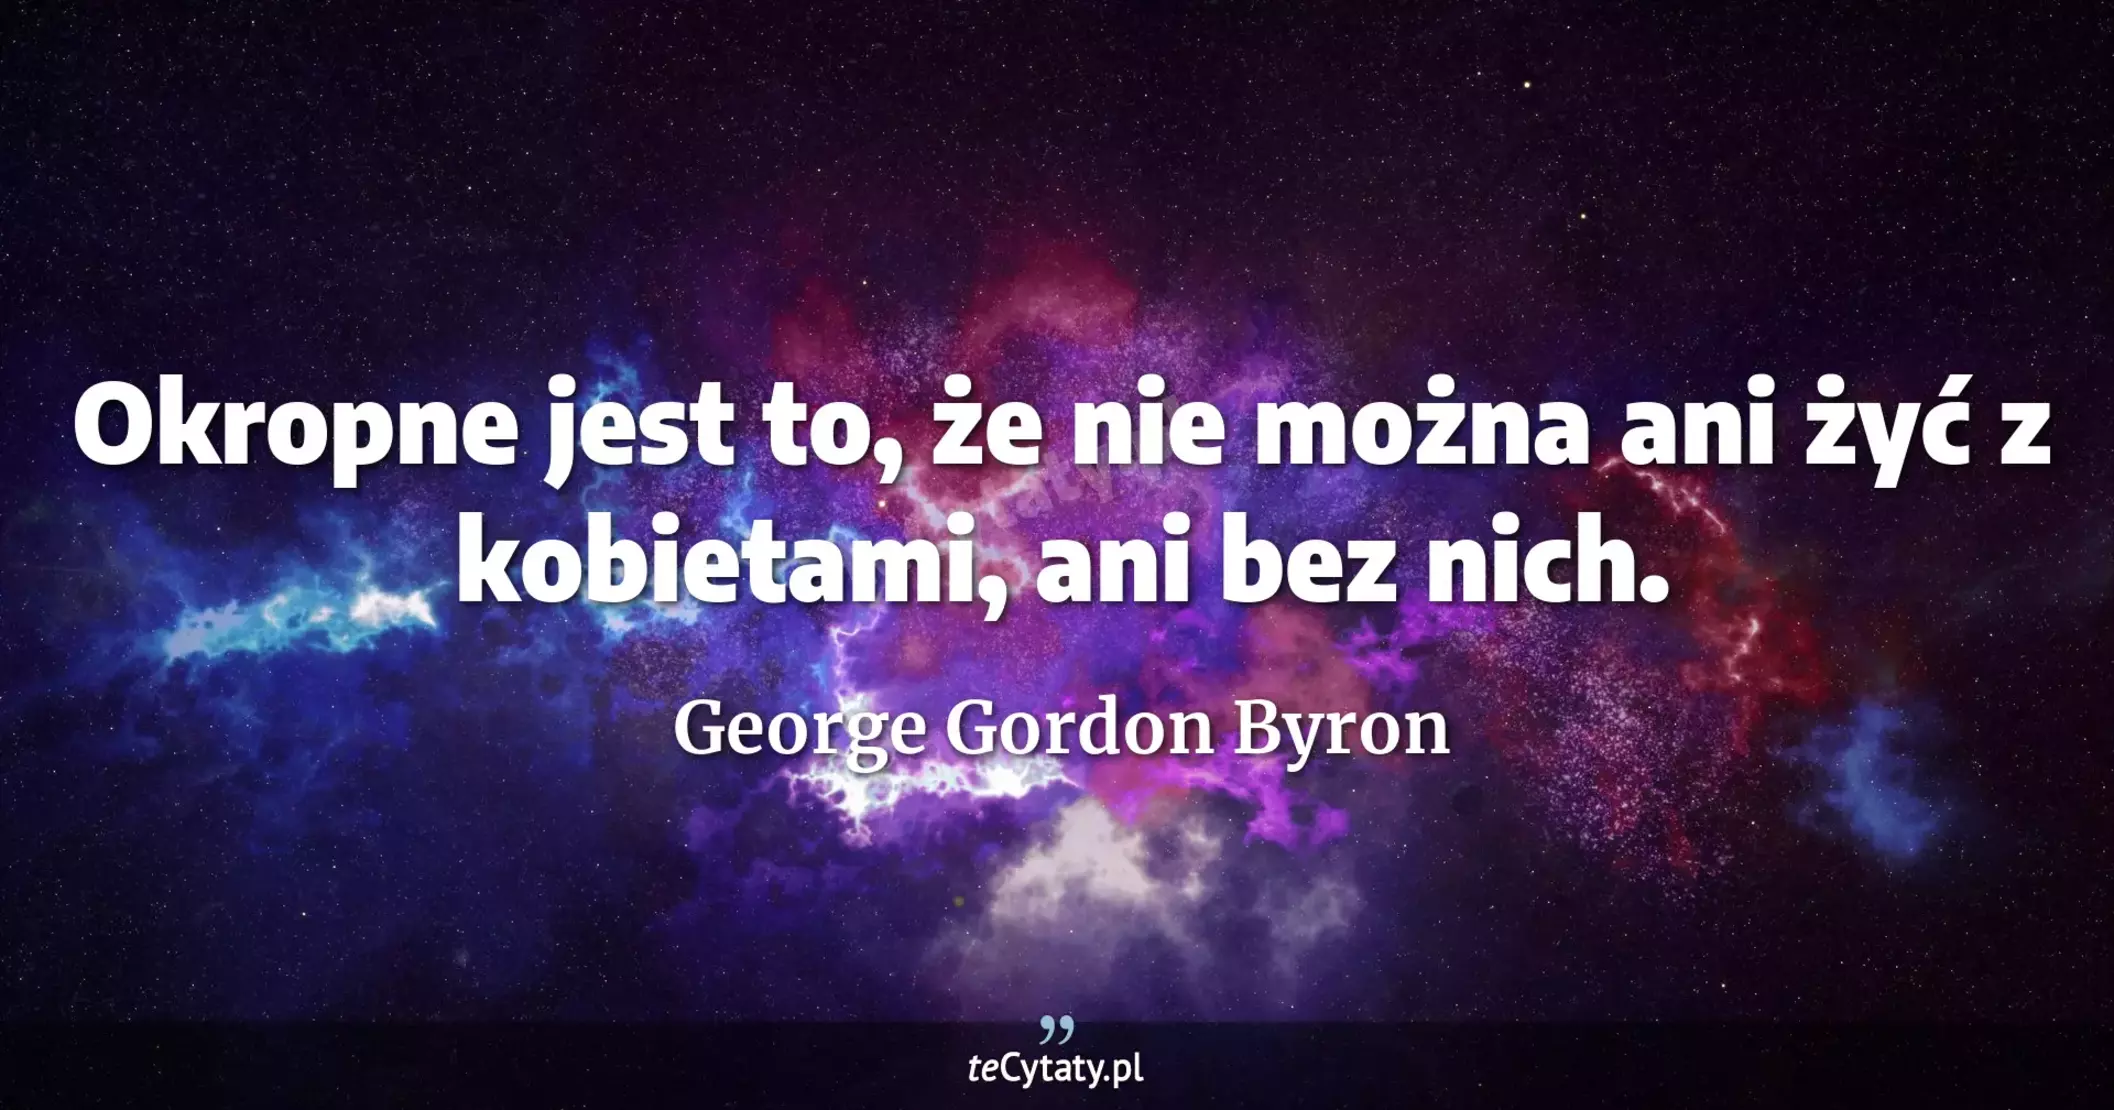 Okropne jest to, że nie można ani żyć z kobietami, ani bez nich. - George Gordon Byron